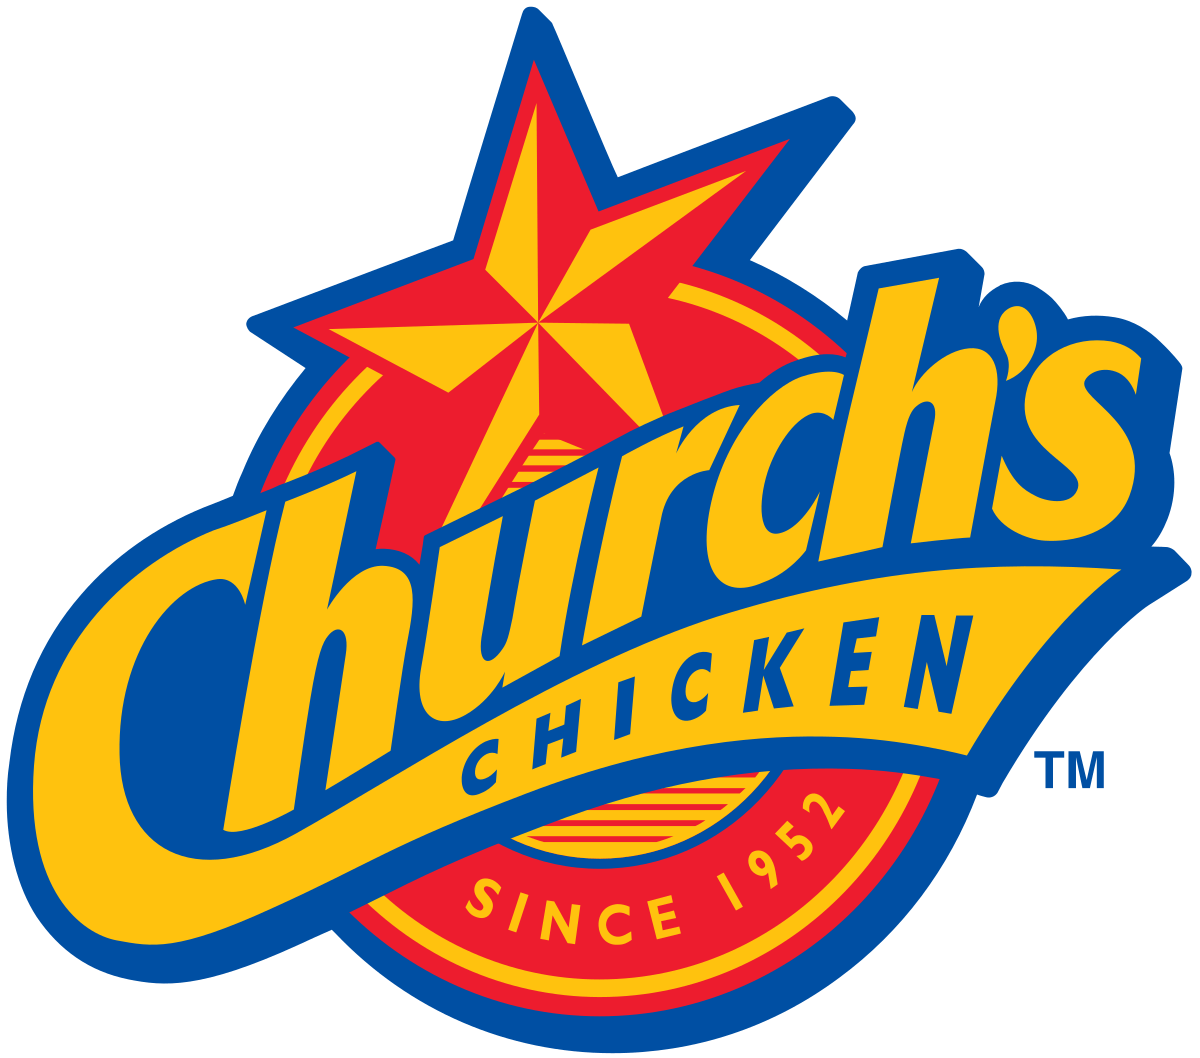 Famous Chicken Logo - Church's Chicken